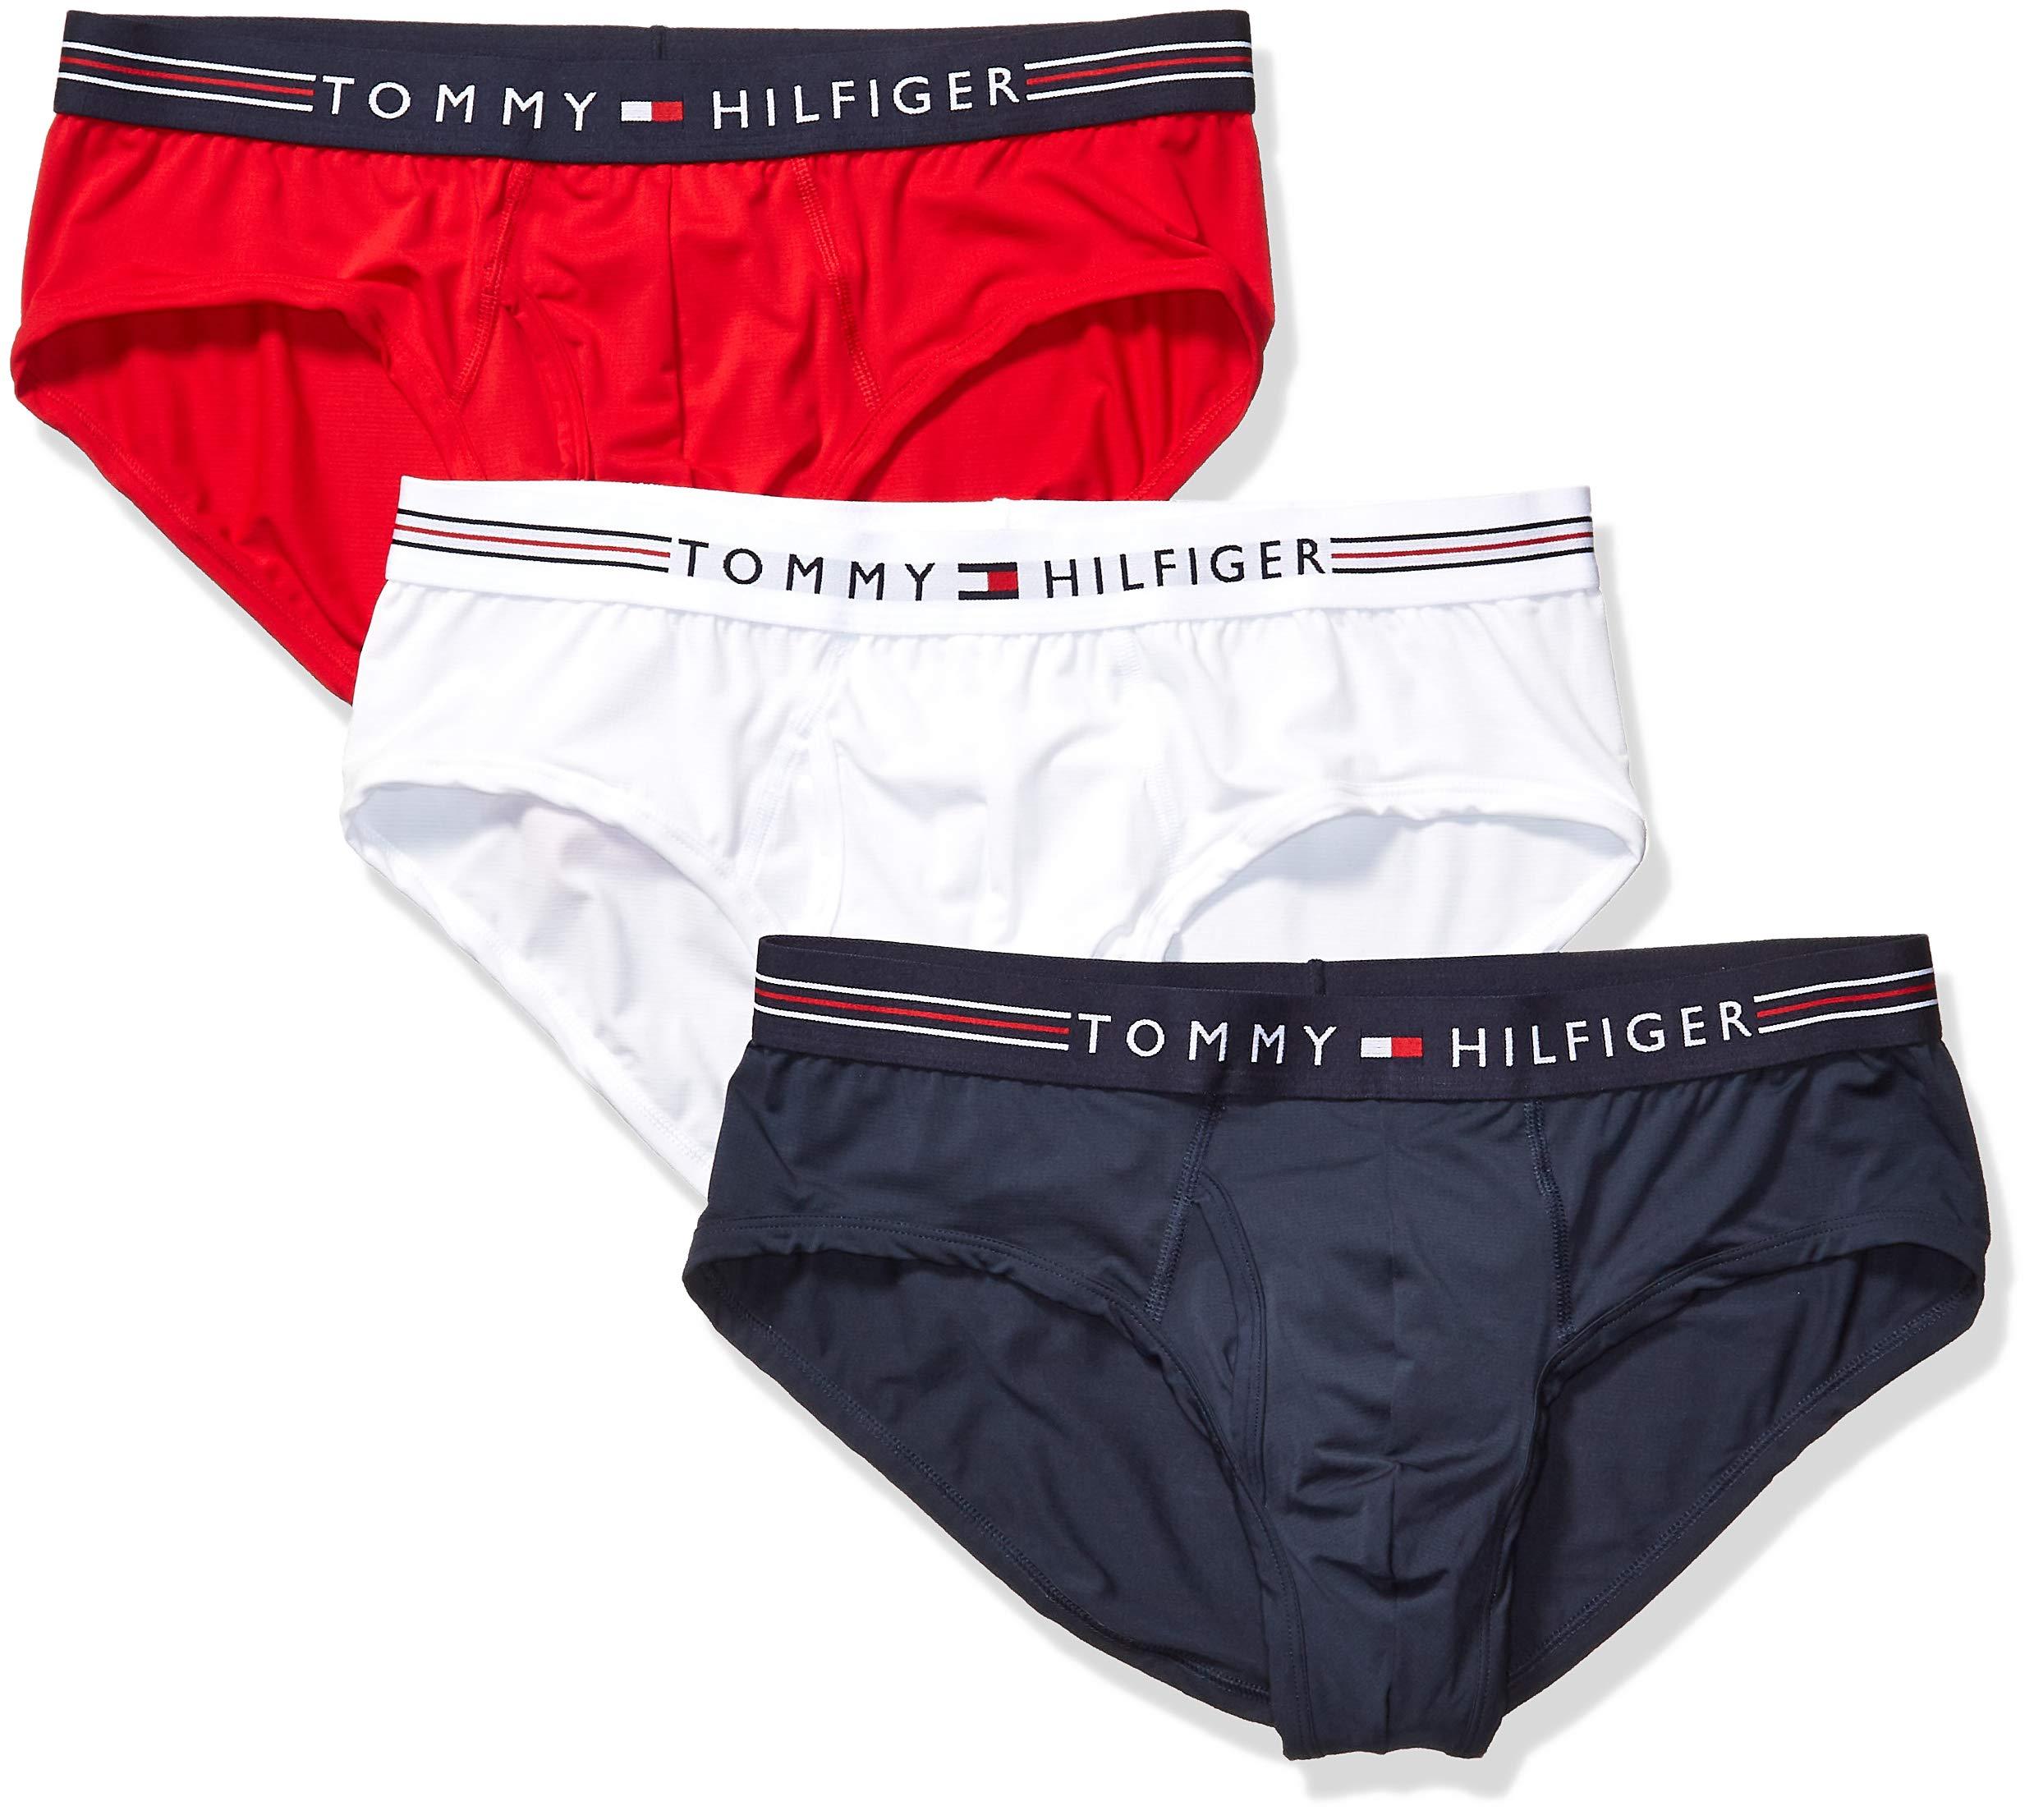 tommy hilfiger underwear near me